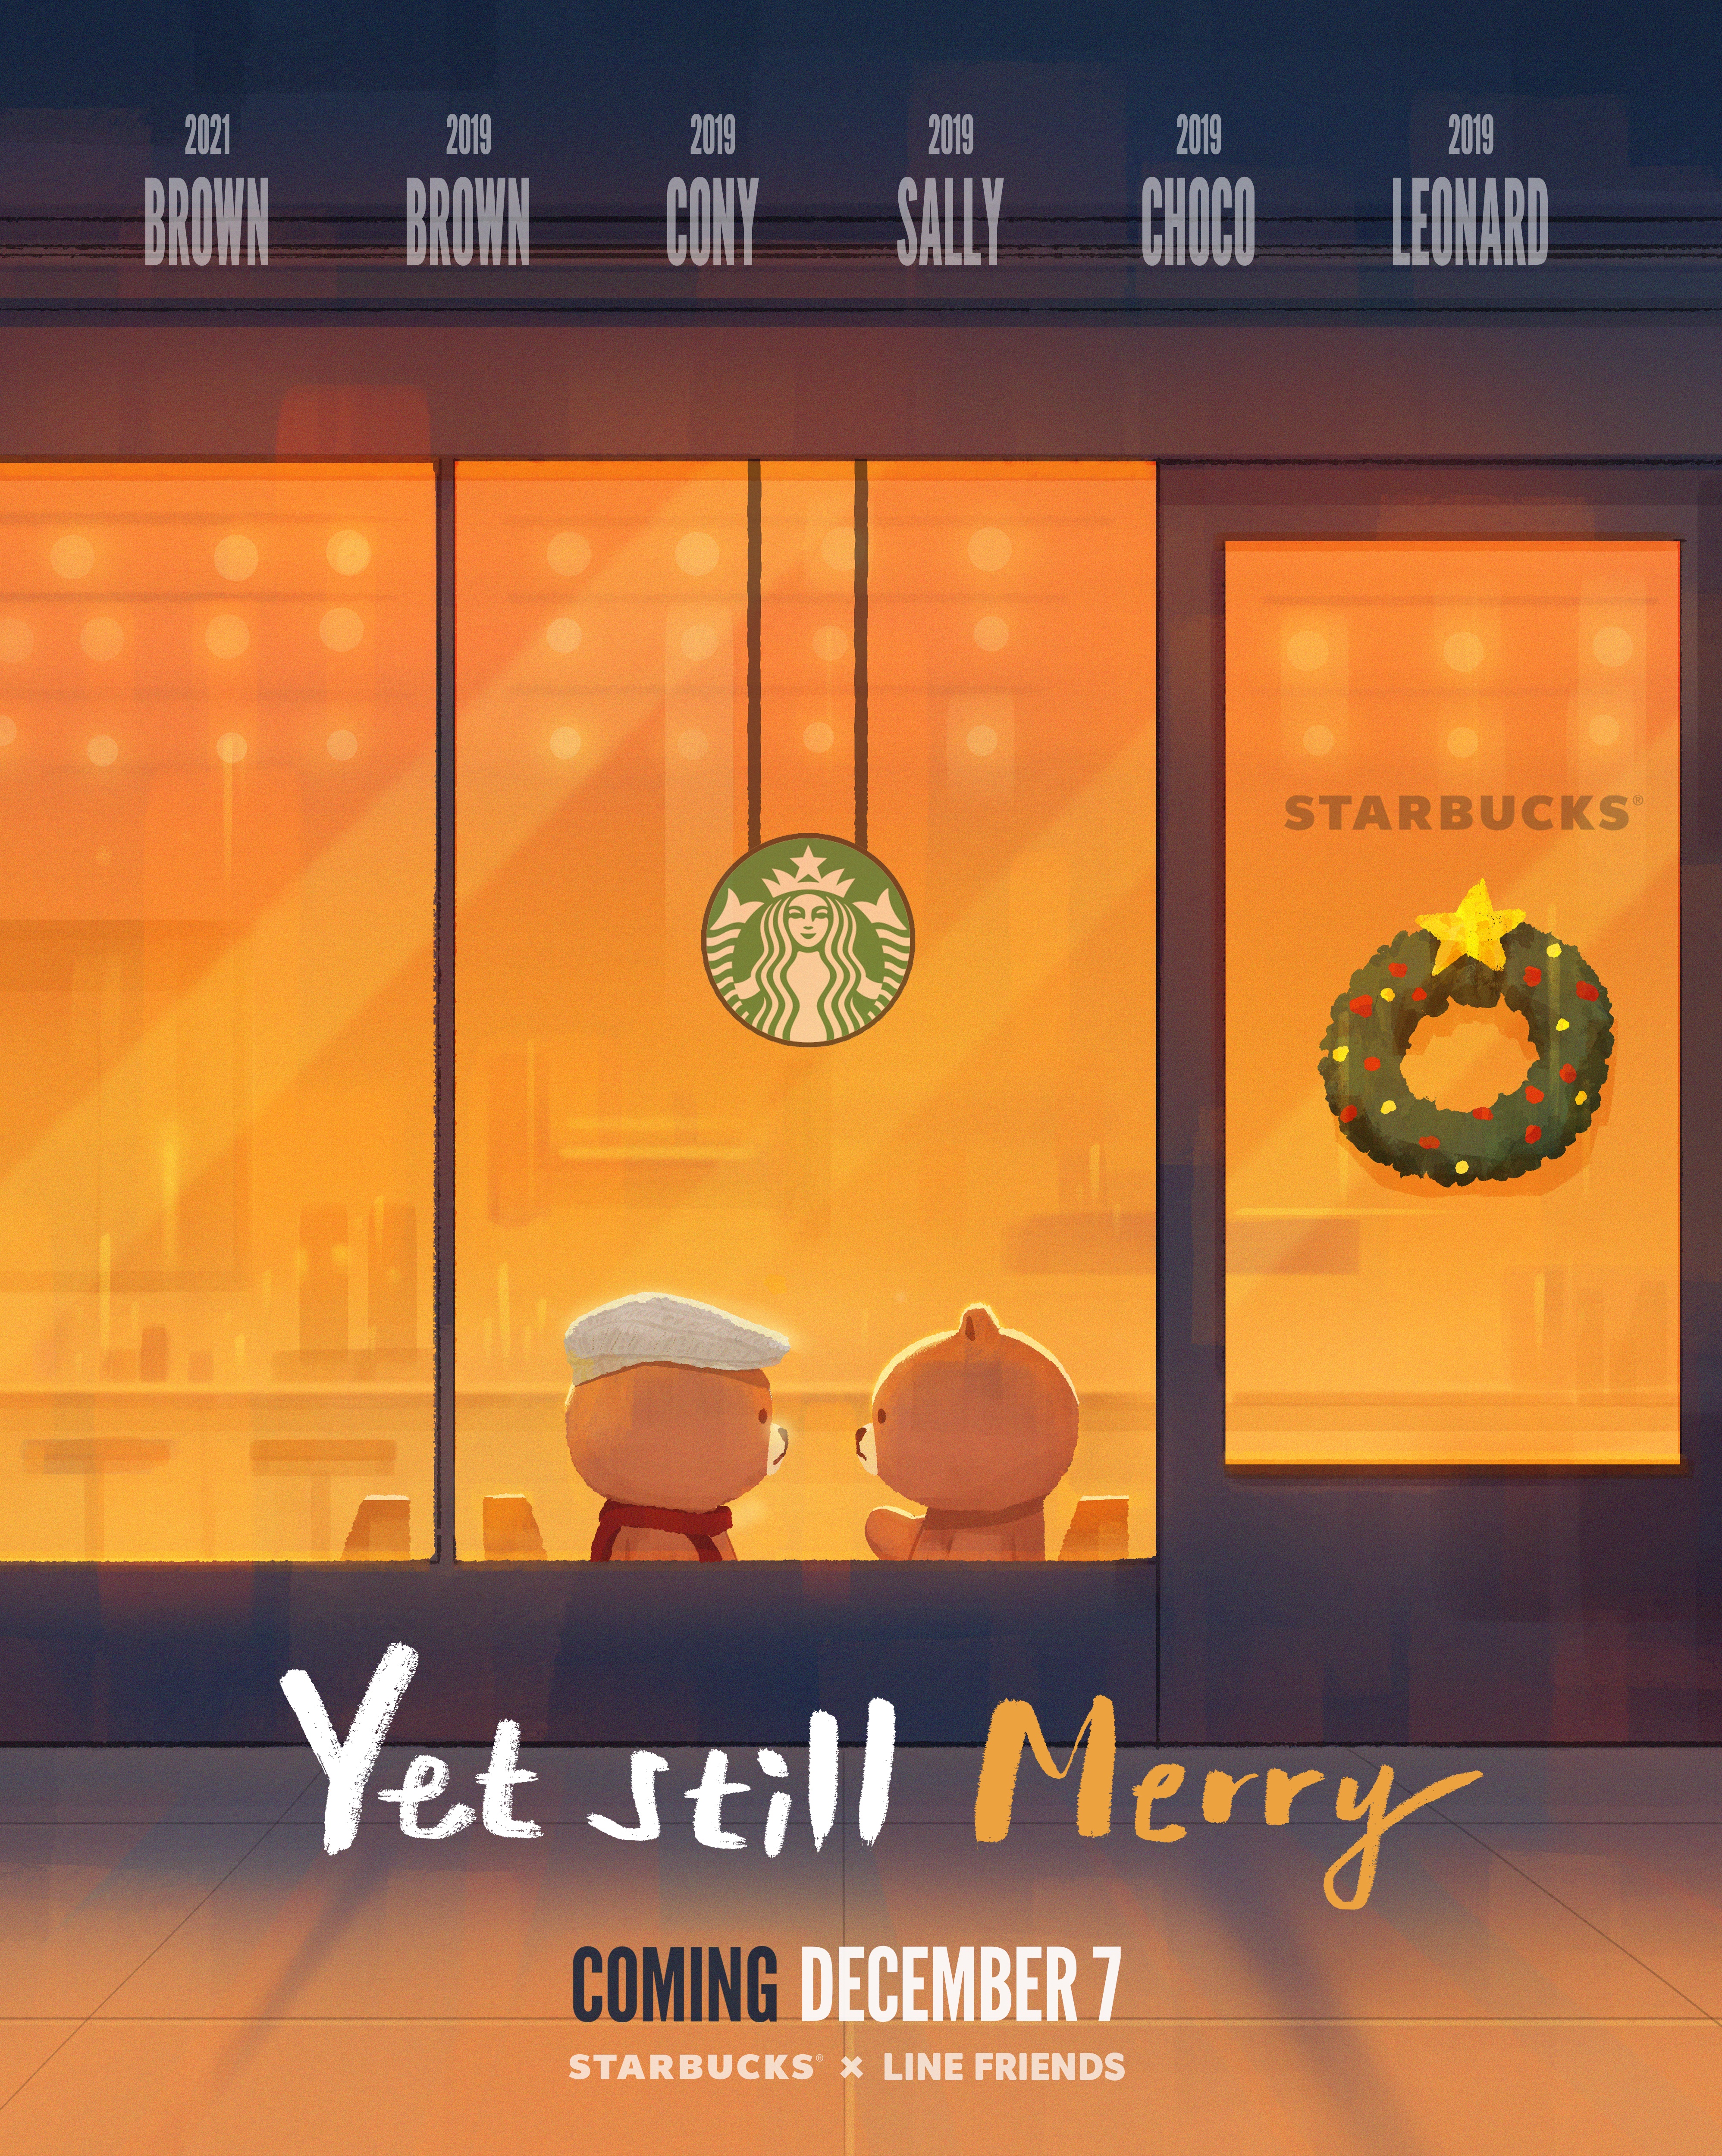 Starbucks_LINE FRIENDS_Illustration_Poster_EN 3.jpg